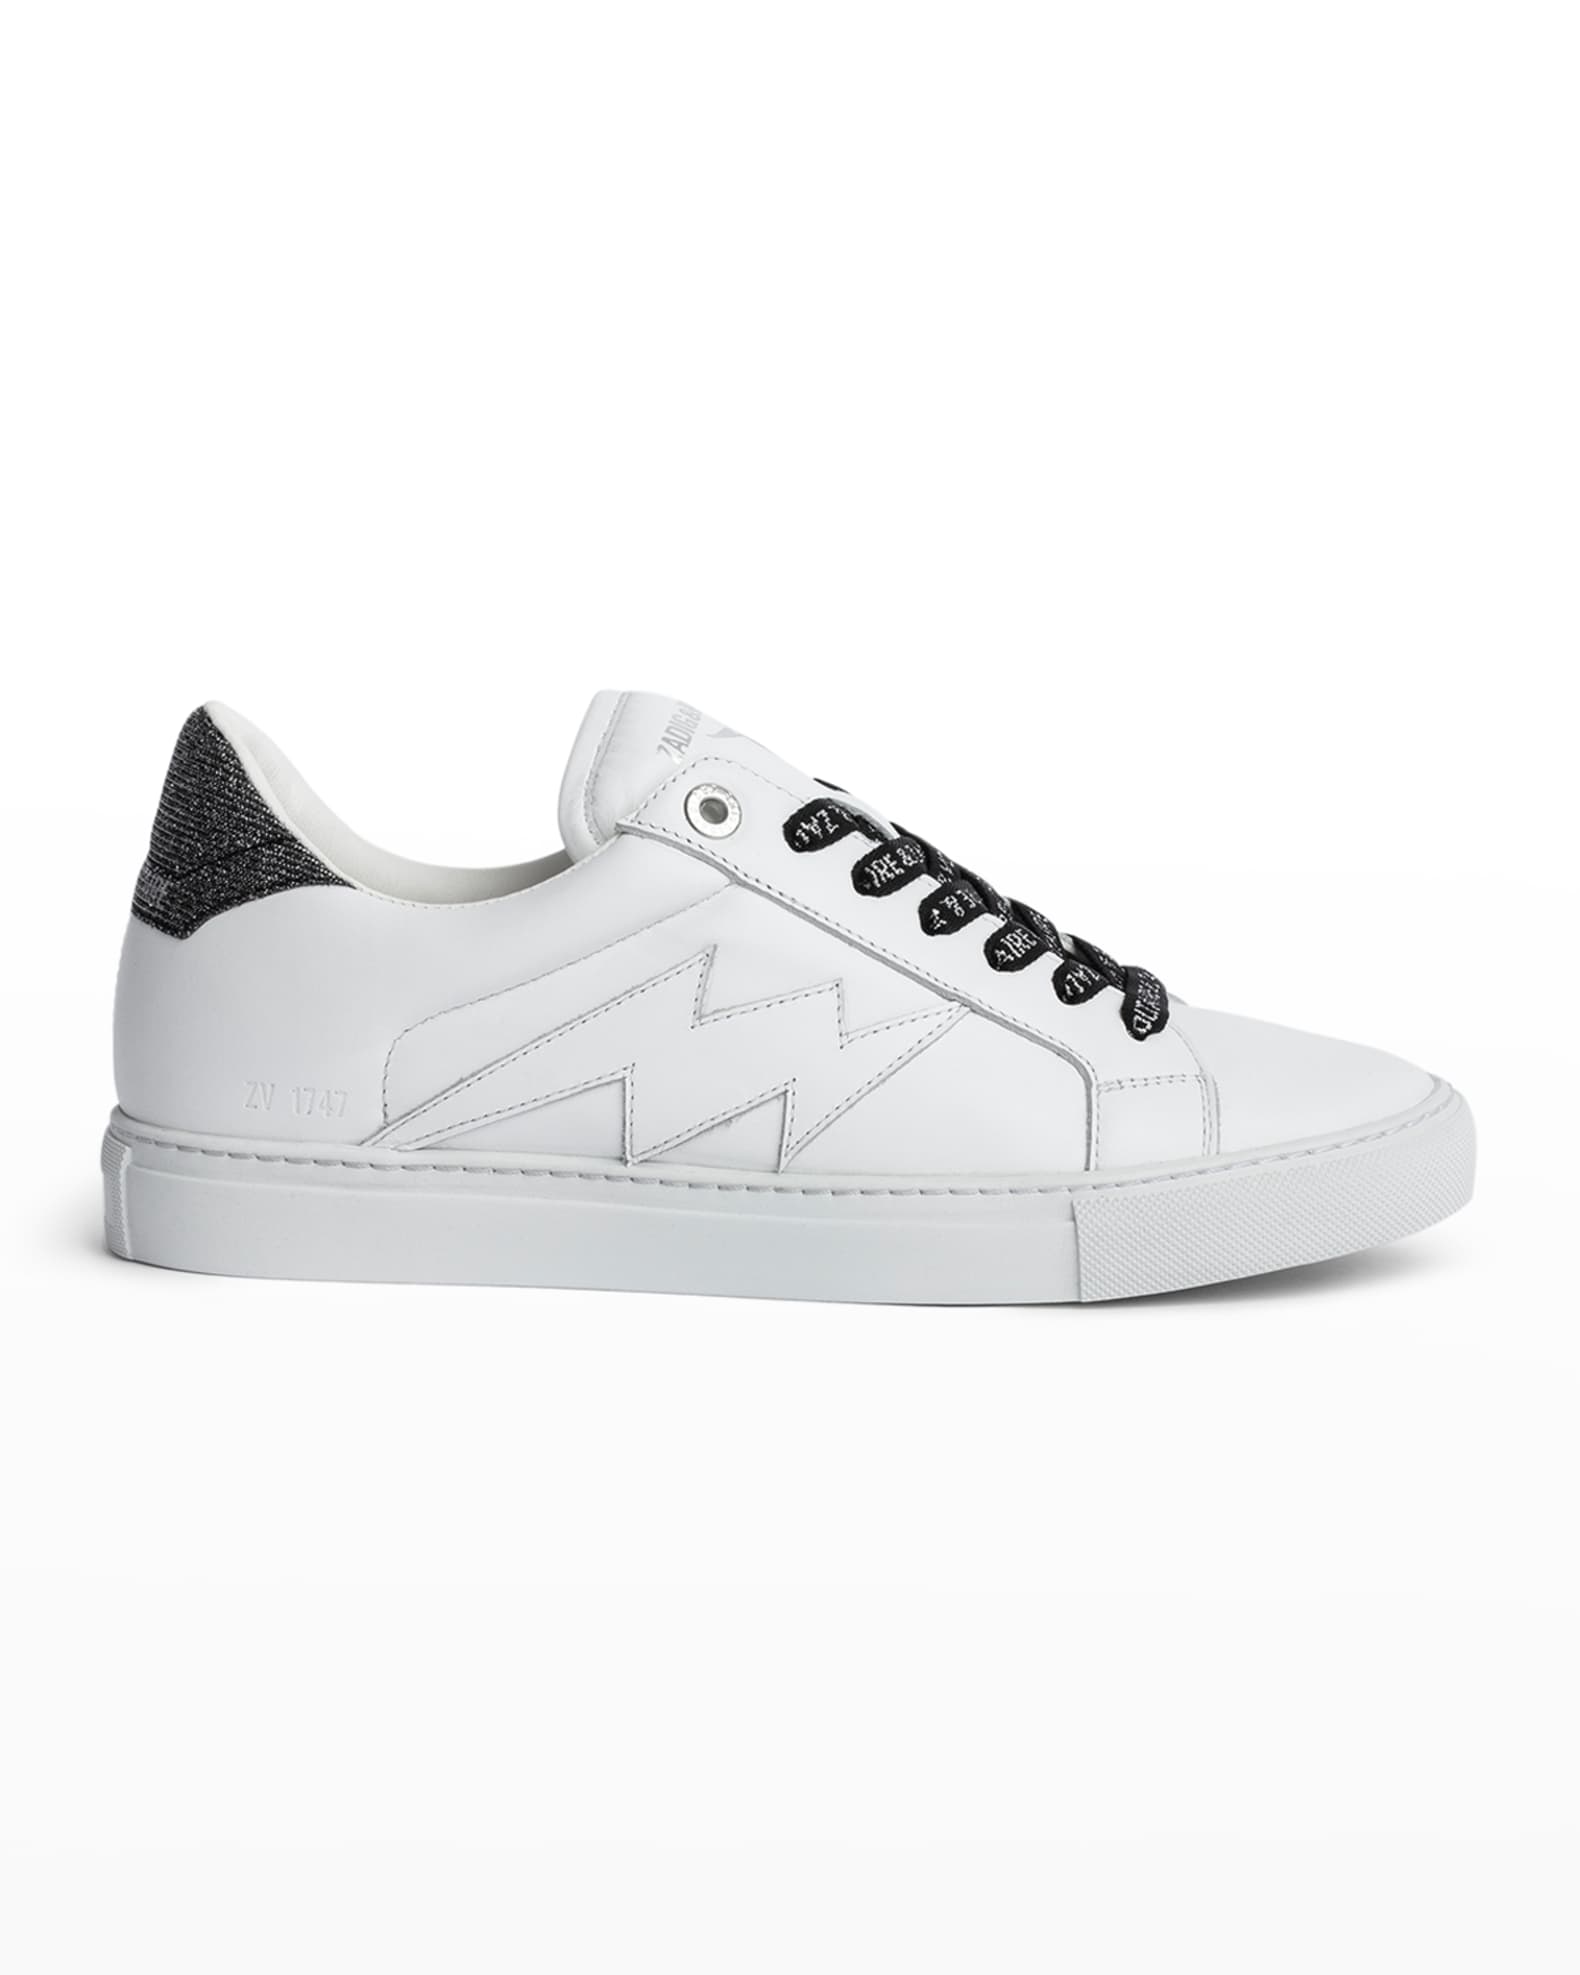 Zadig & Voltaire Flash Calfskin Low-Top Sneakers | Neiman Marcus